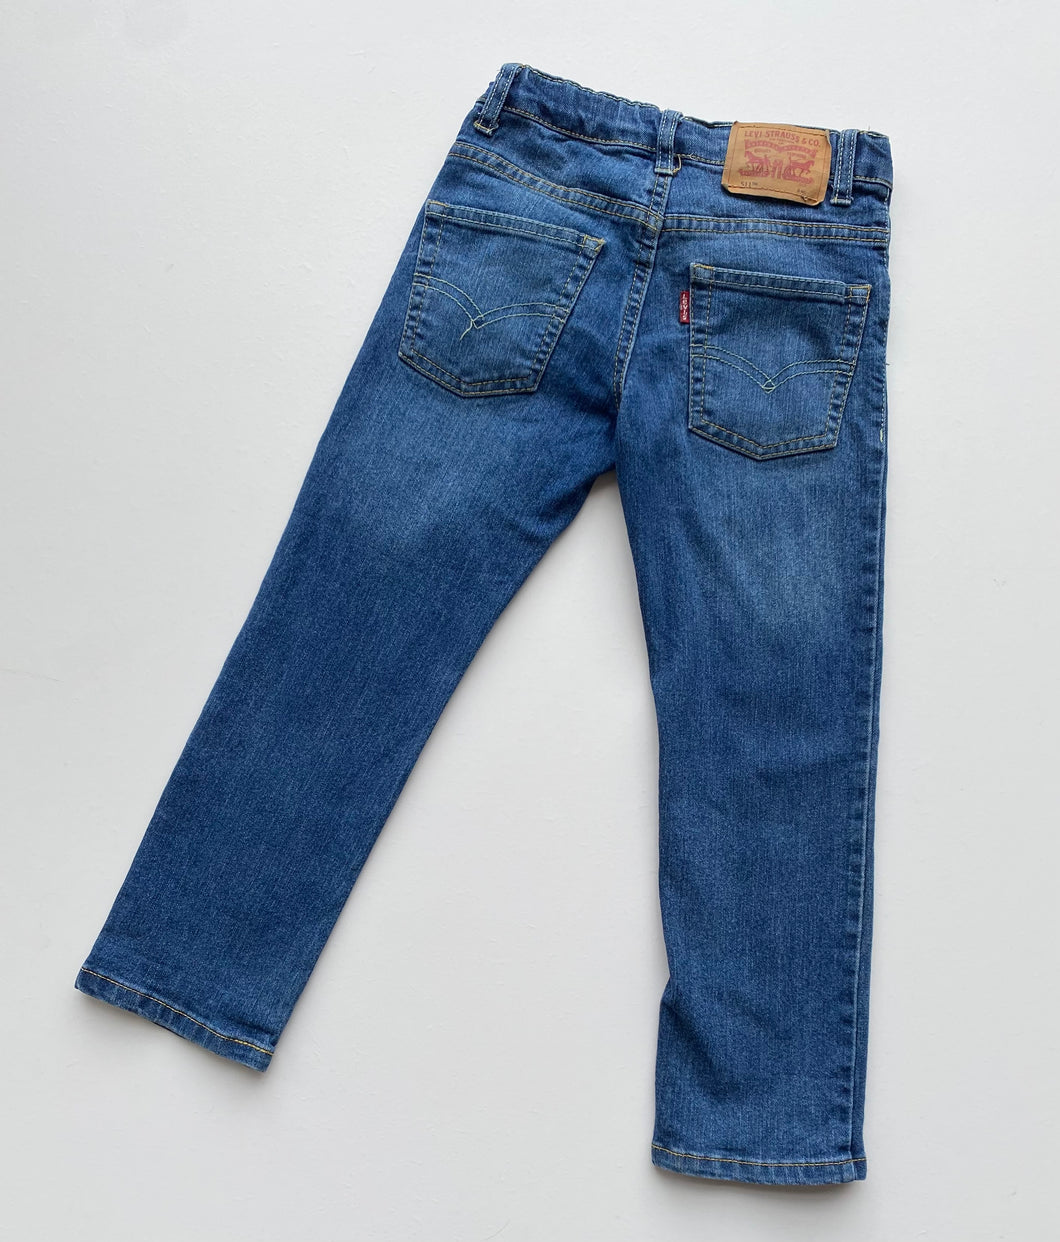 Levi’s 511 jeans (Age 5/6)